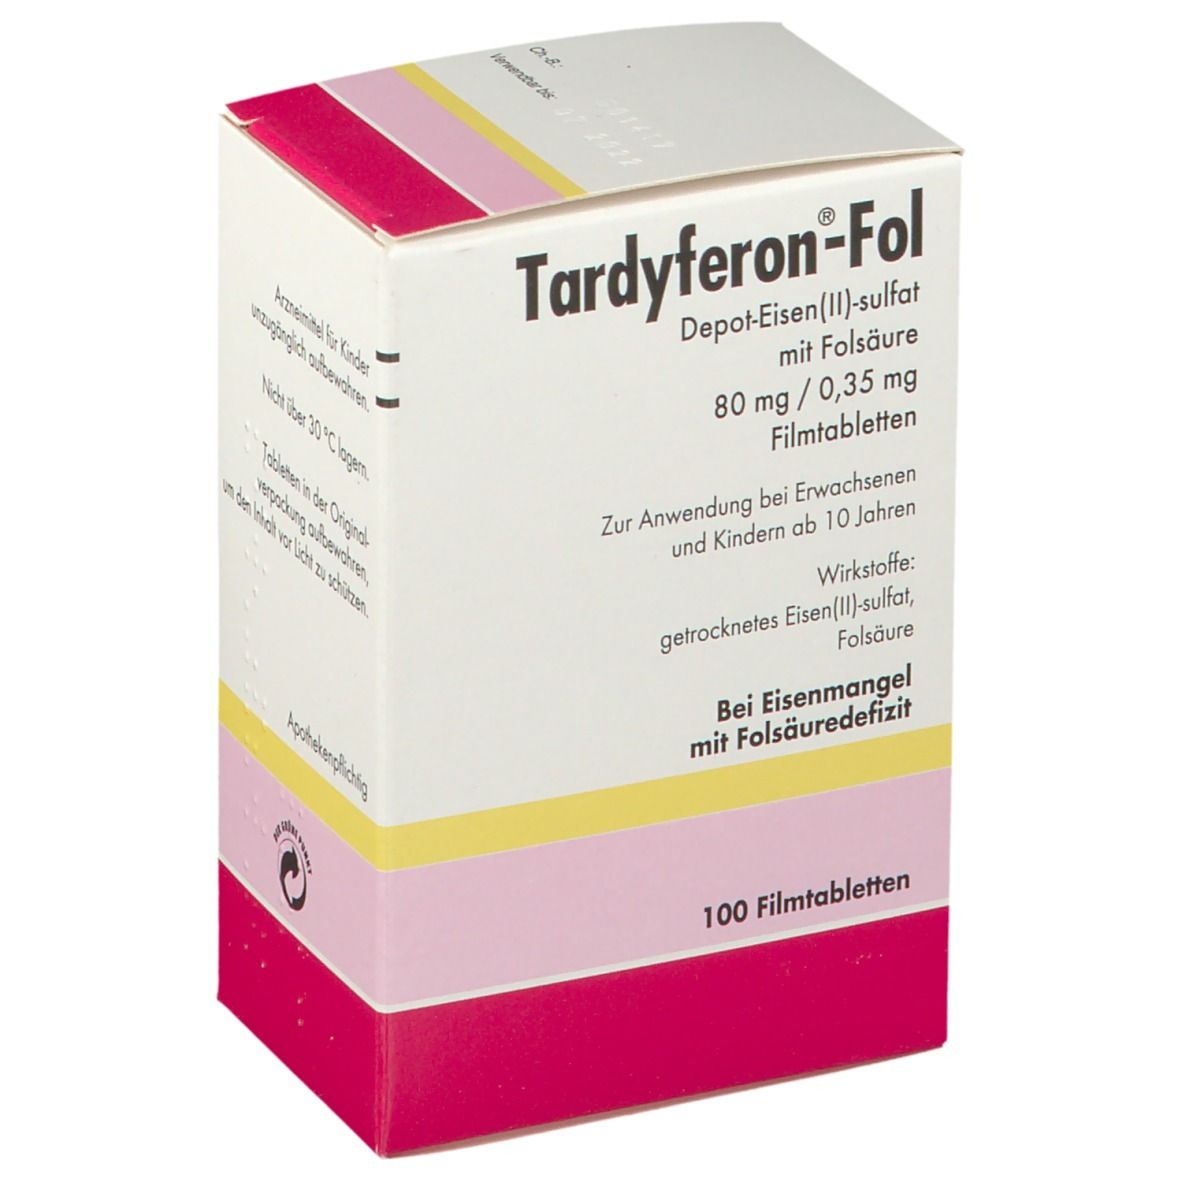 Tardyferon-Fol Depot-Eisen(II)-sulfat